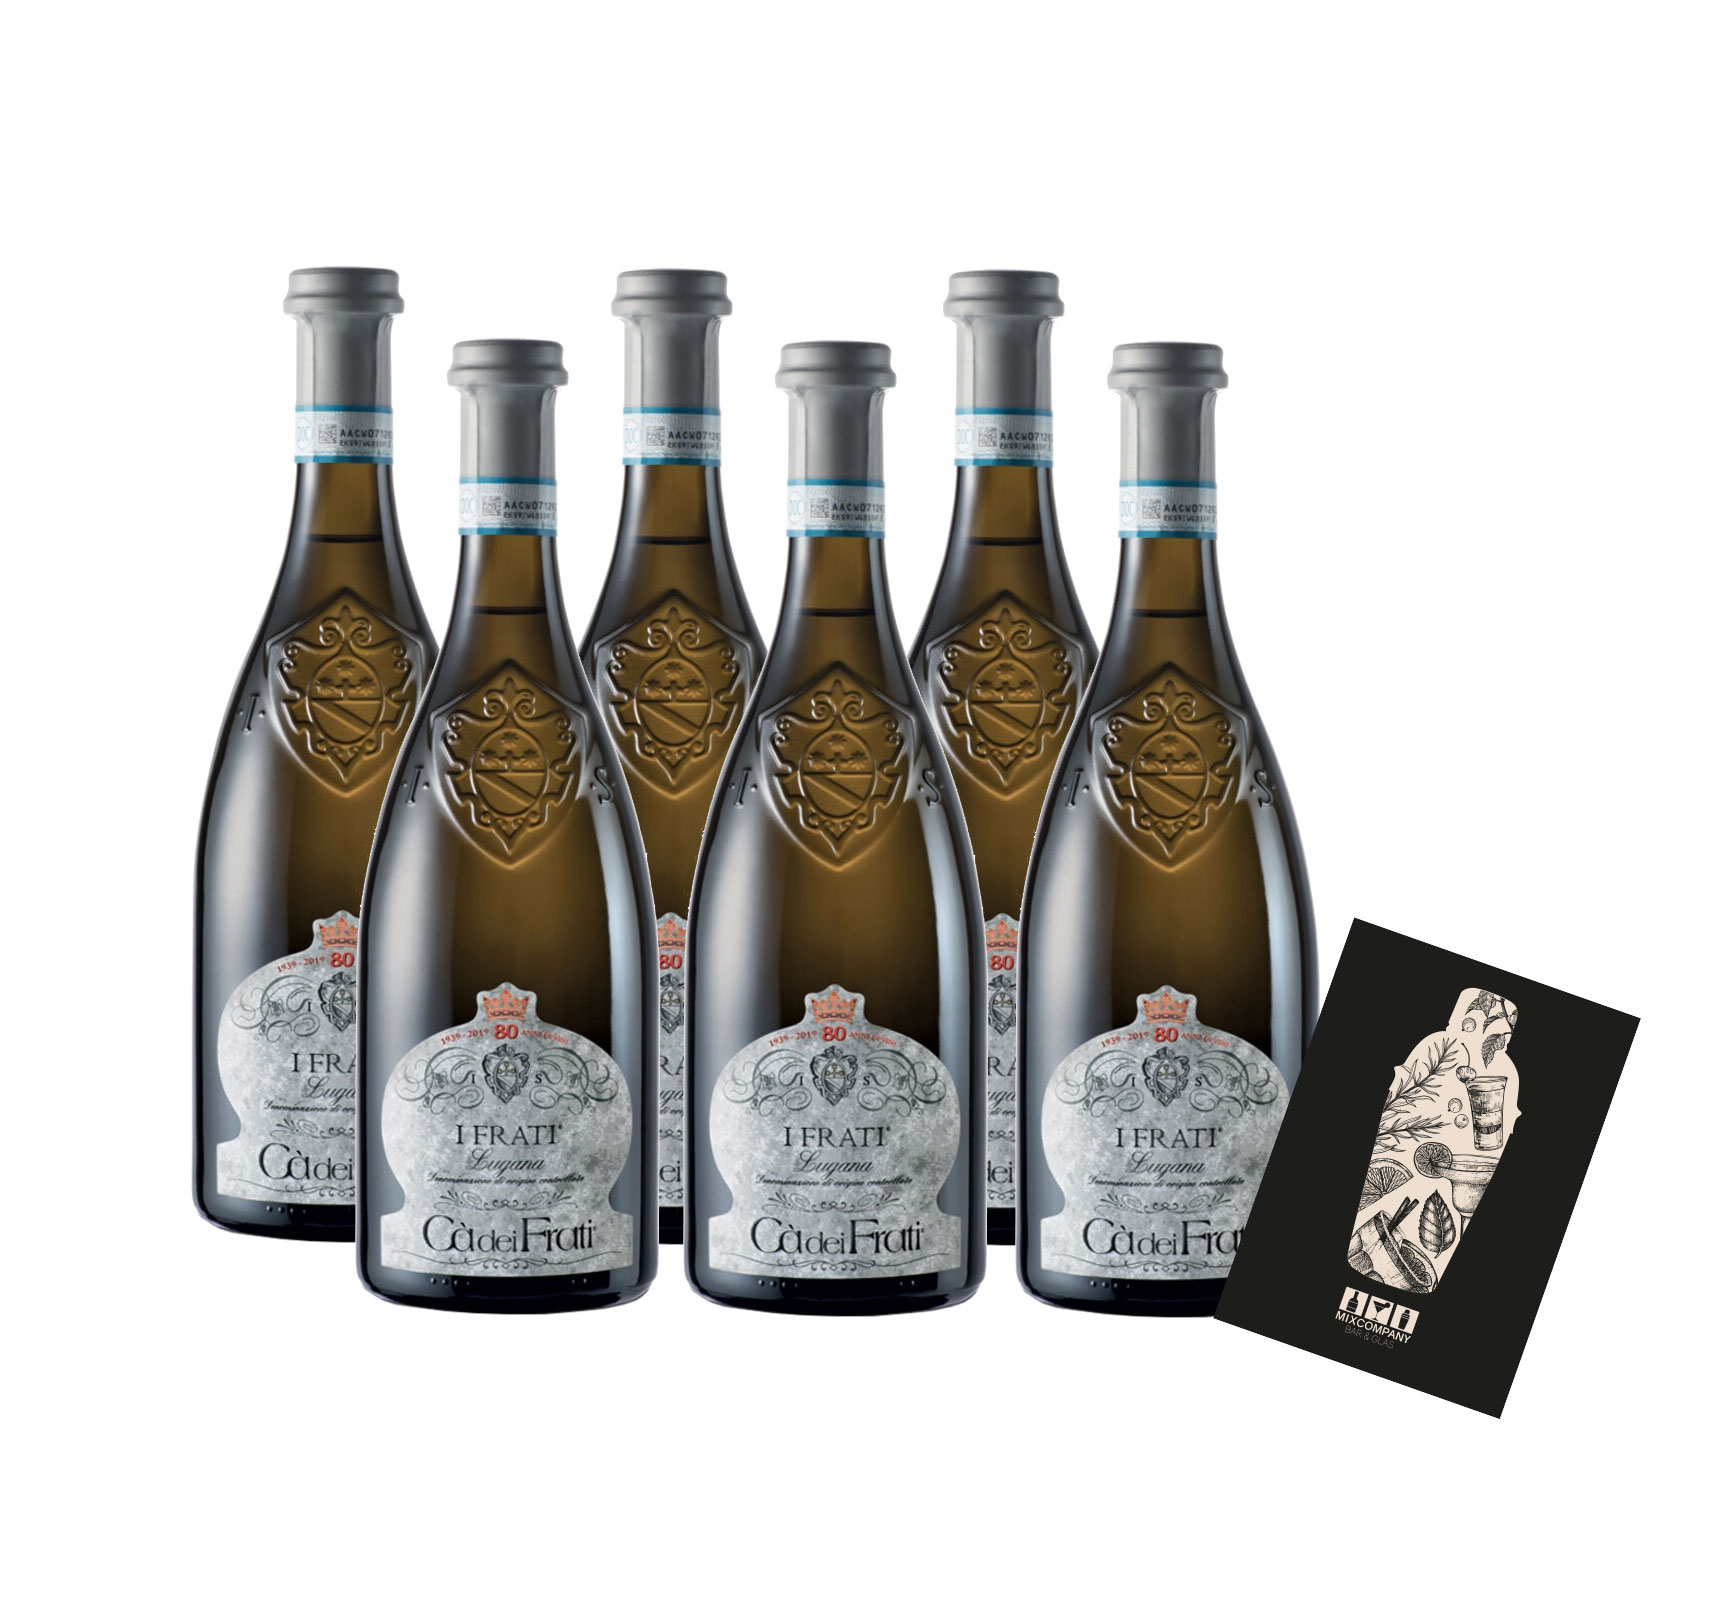 Ca dei Frati 6er Set Lugana 6x 0,75L (13% Vol) Venetien, Italien trocken Weißwein- [Enthält Sulfite]